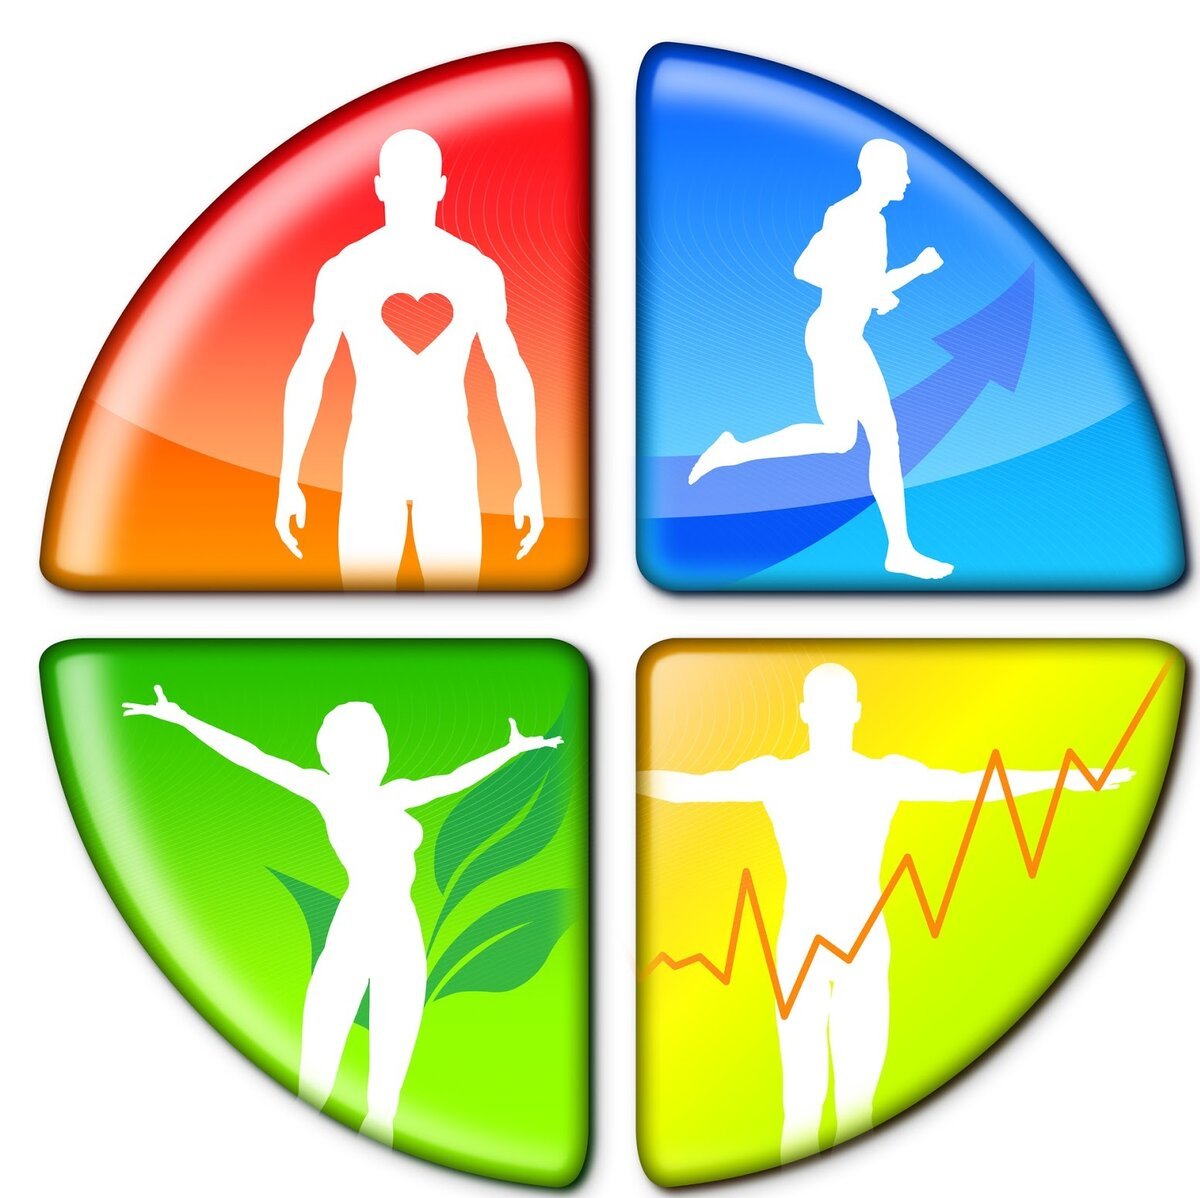 Здравоохранение - ЗОЖ - Здоровый образ жизни - Wellness - Велнес